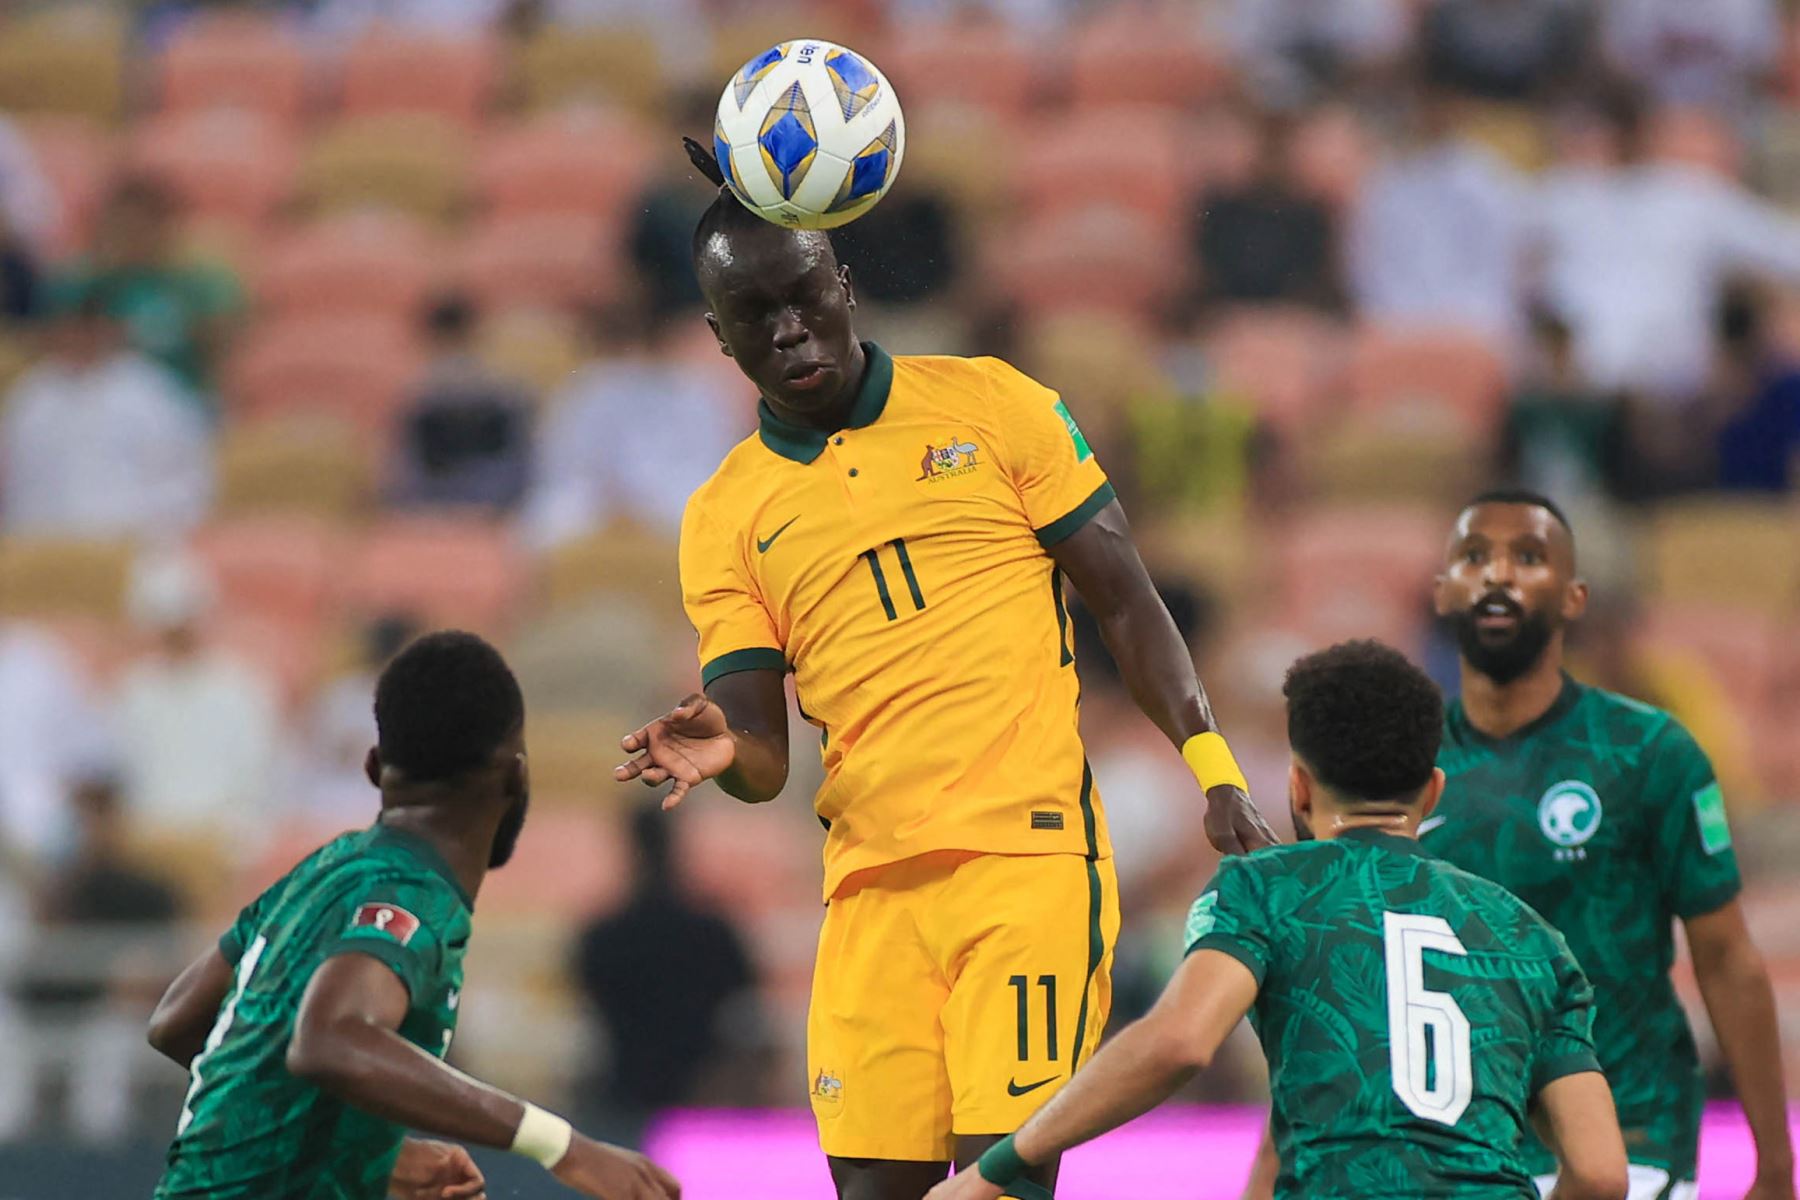 El delantero australiano Awer Mabil  encabeza el balón durante el partido de fútbol de las eliminatorias asiáticas para la Copa Mundial de Qatar 2022 entre Arabia Saudita y Australia, en el estadio King Abdullah Sport City en la ciudad de Jeddah.
Foto: AFP